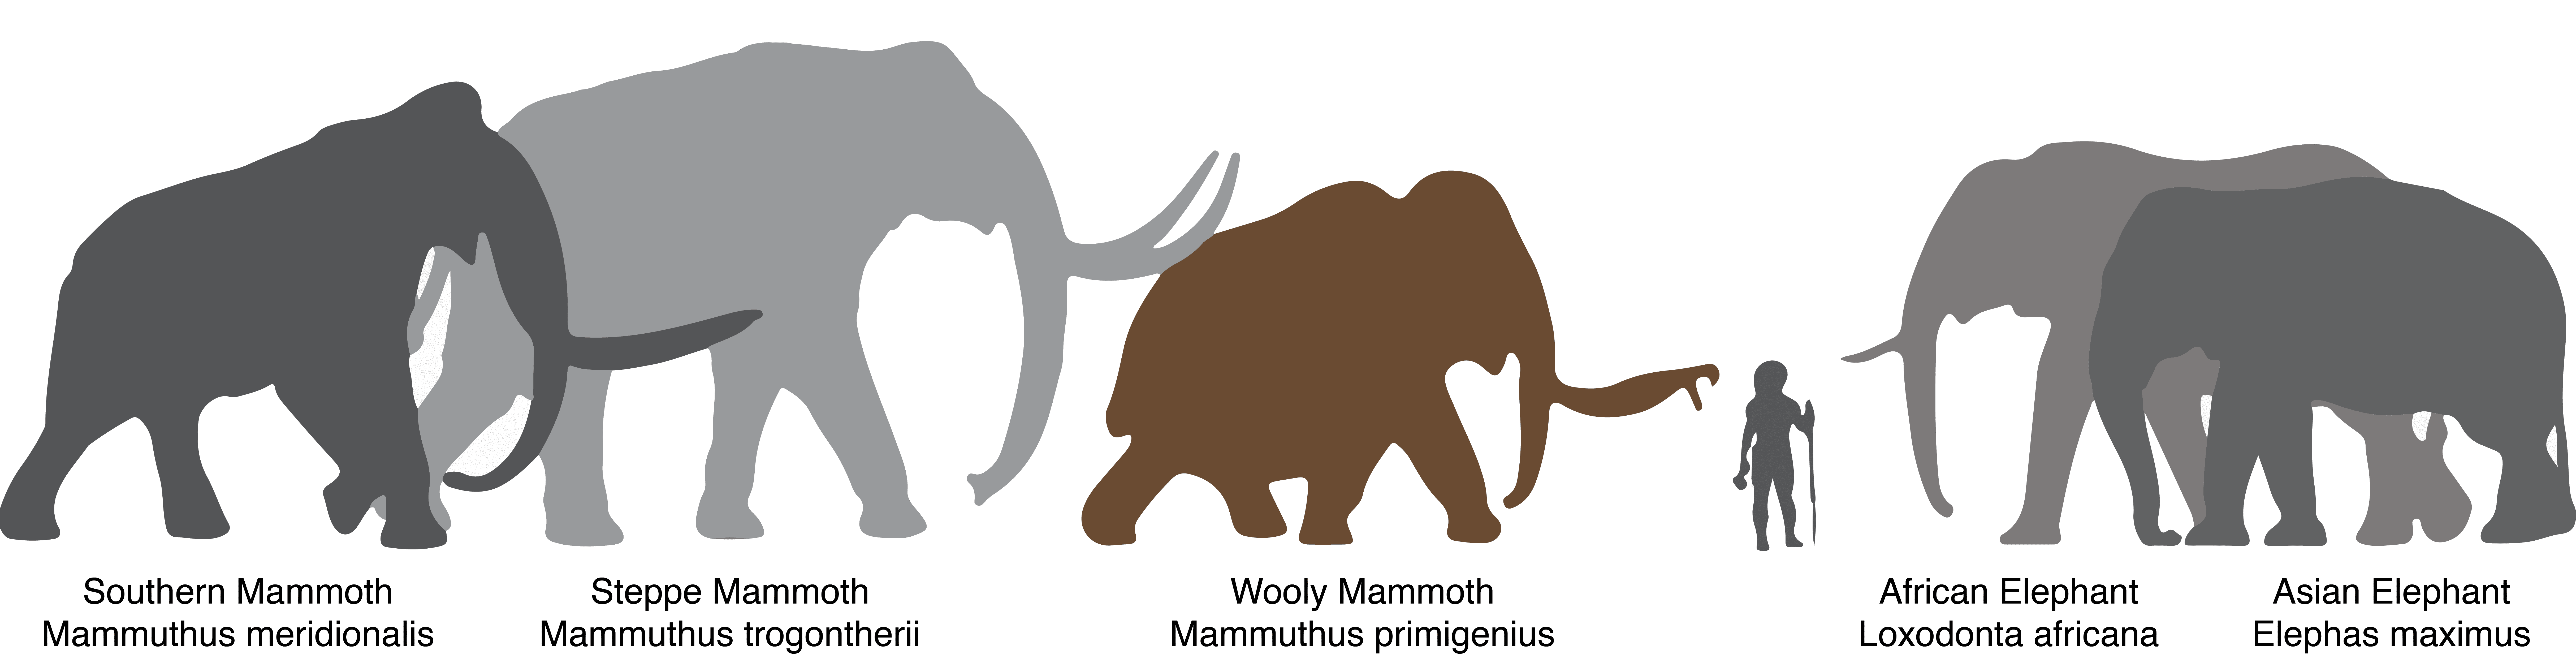 Слон группа организмов. Шерстистый мамонт и колумбийский мамонт. Слон и шерстистый мамонт. Шерстистый мамонт сравнение с человеком. Шерстистый мамонт и Африканский слон.